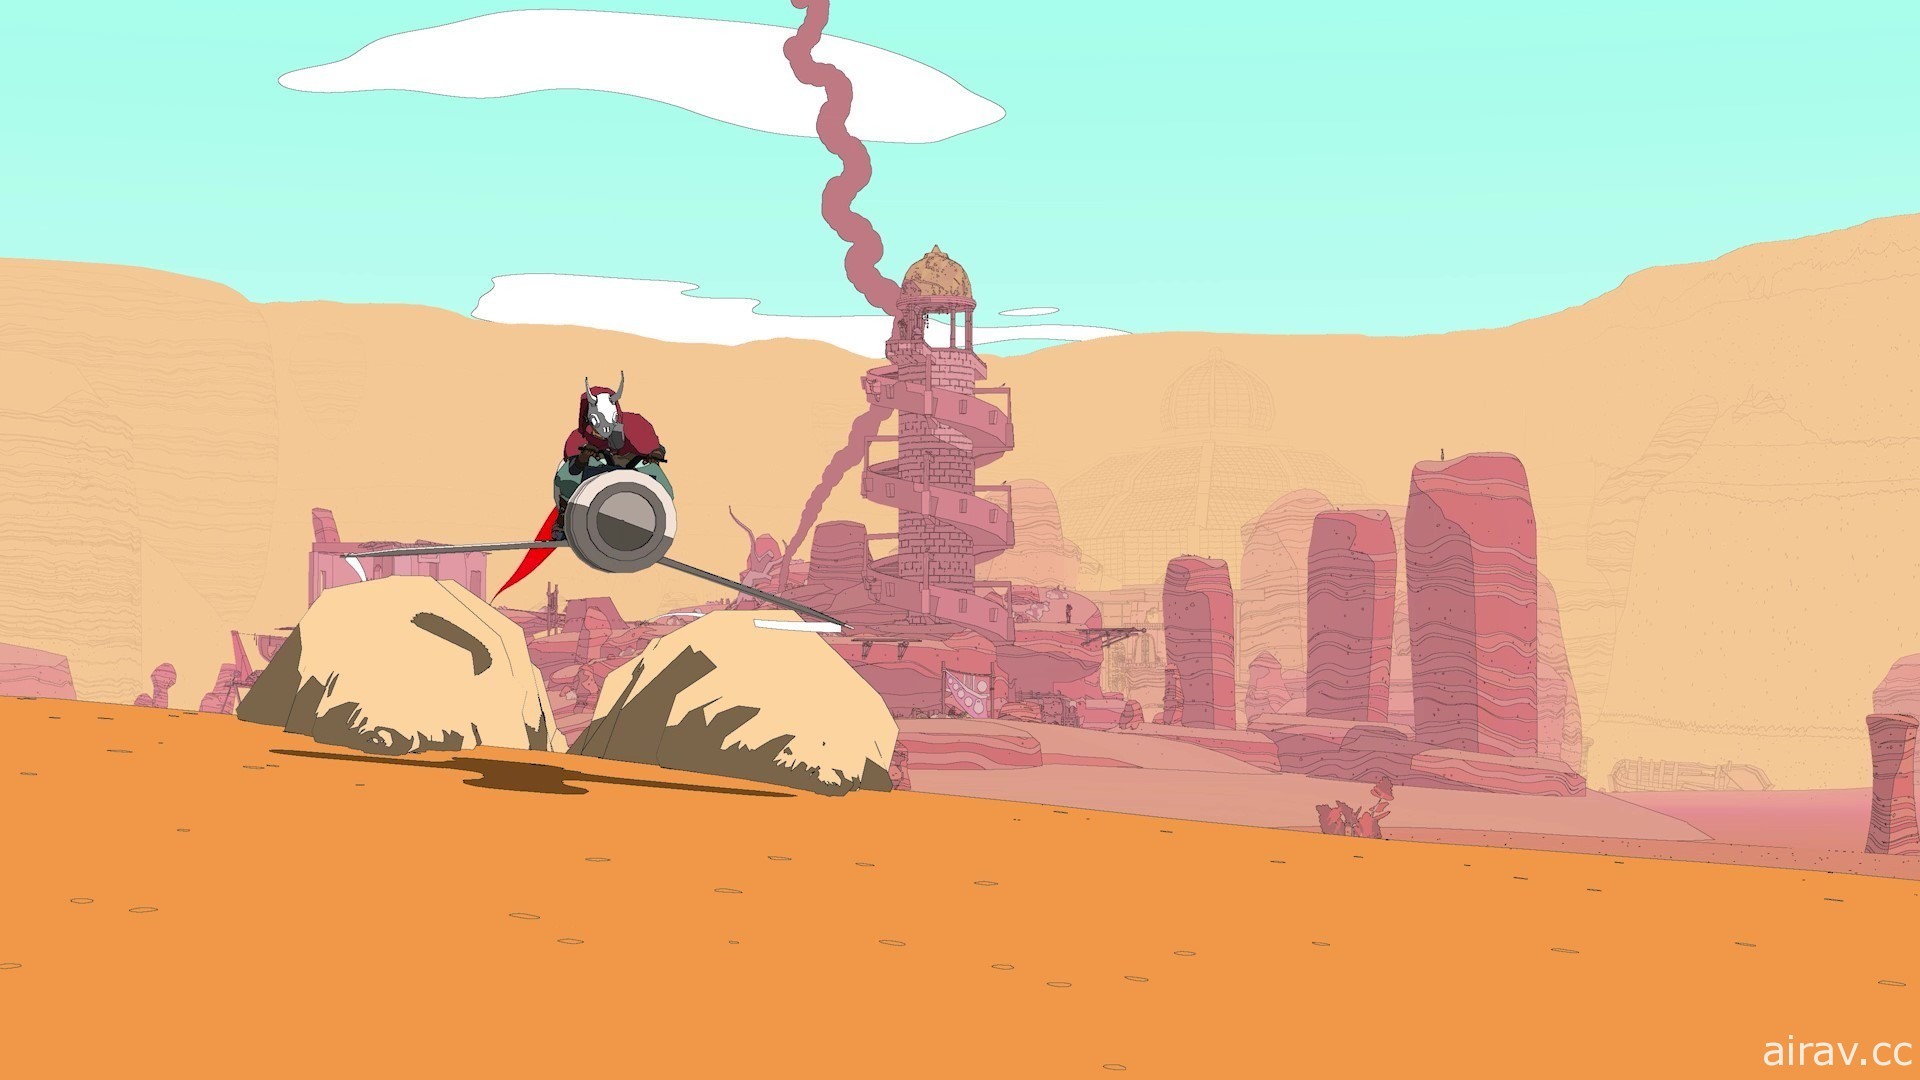 《沙漠旅人 Sable》再度釋出試玩版 預定 9 月 23 日正式上市